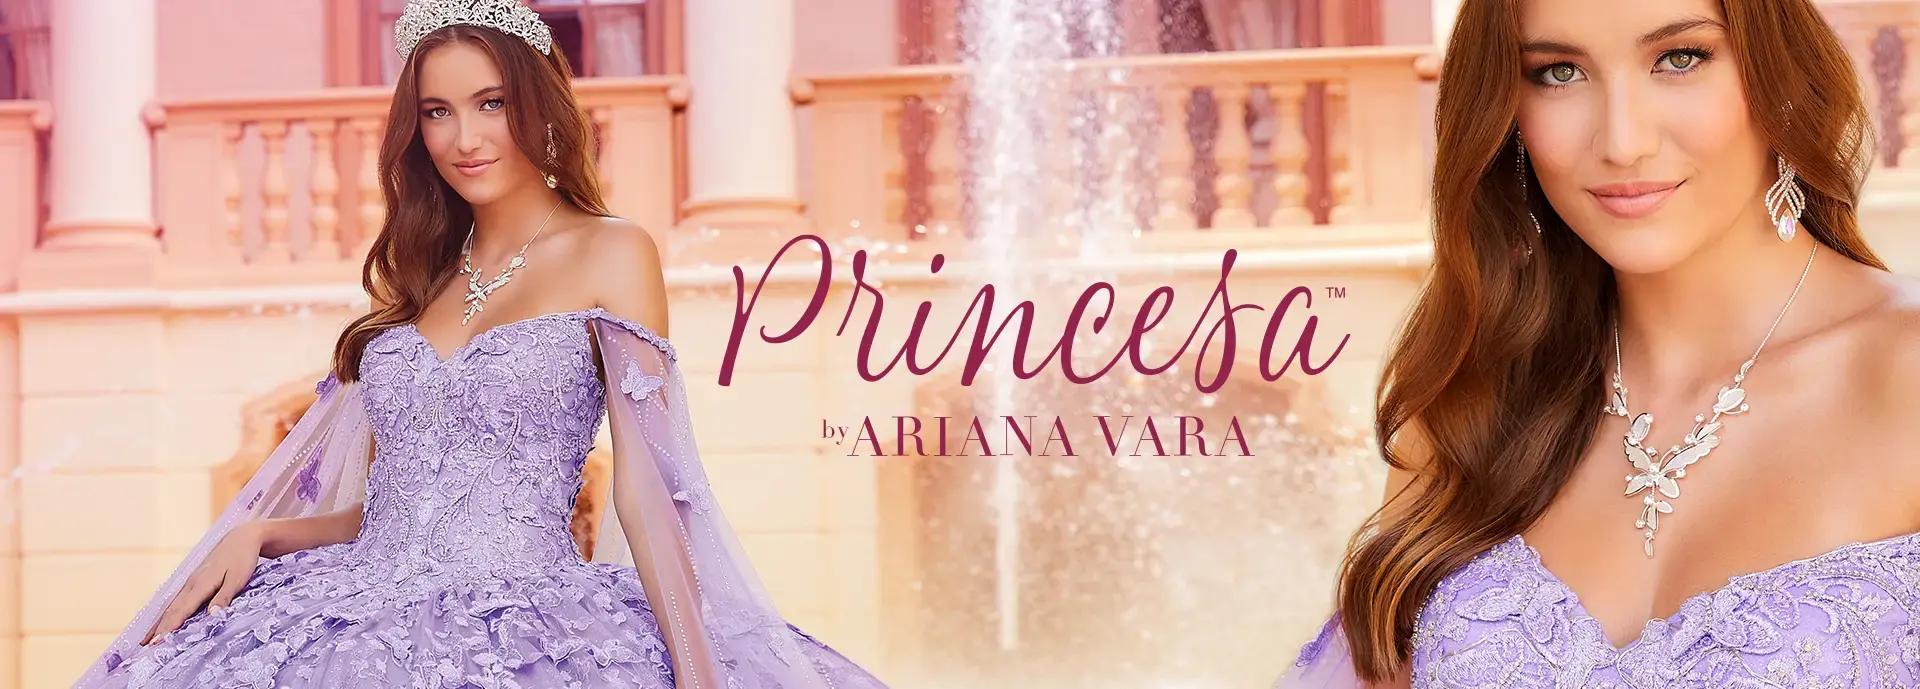 Girl wearing purple quinceañera dress